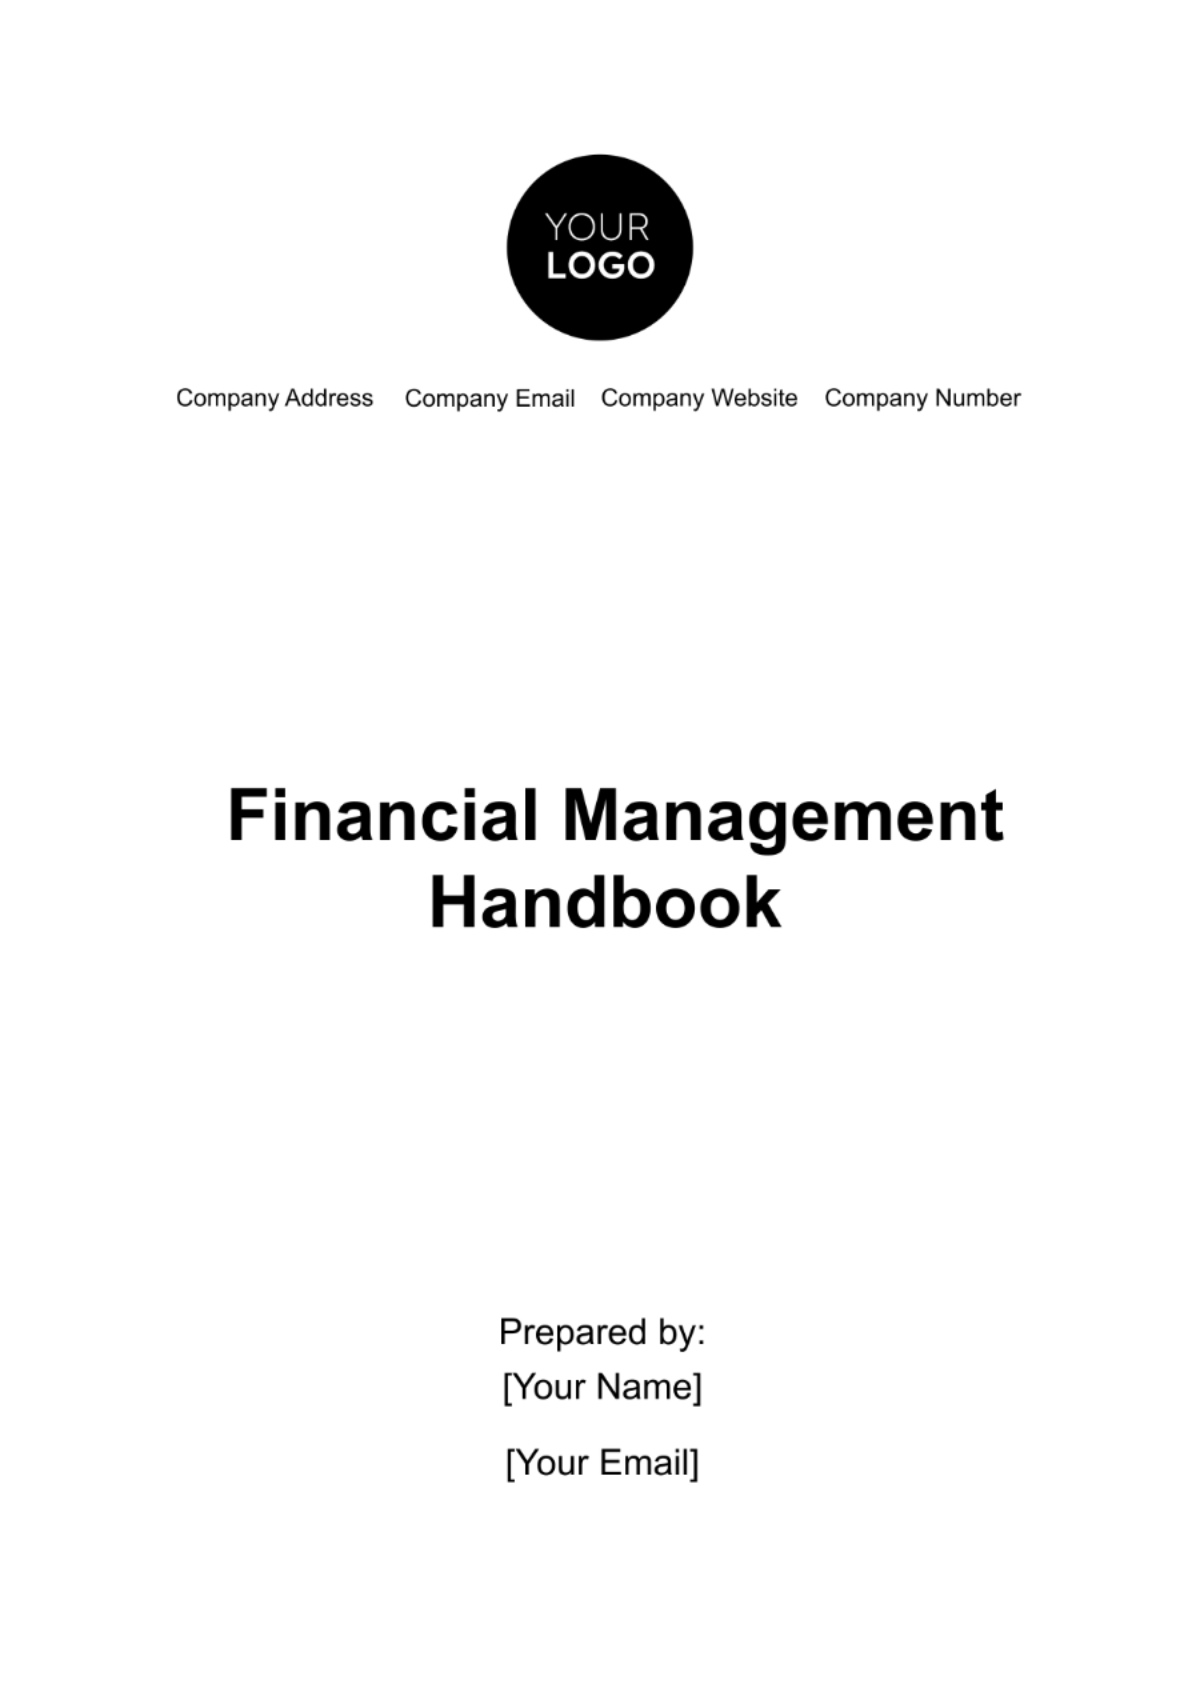 Financial Management Handbook Template